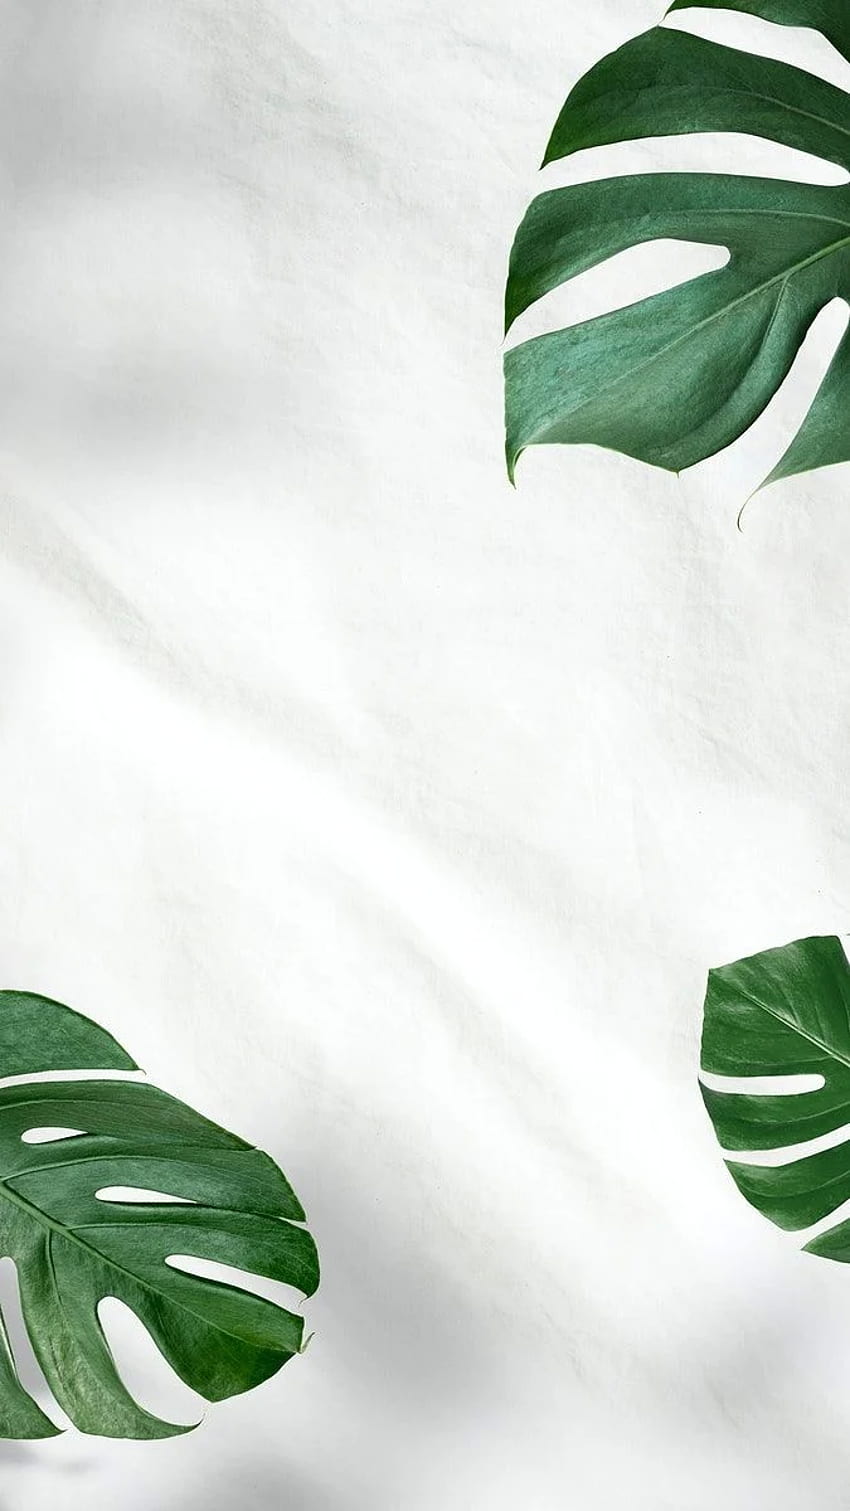 Minimalist Plants HD Wallpapers  Top Free Minimalist Plants HD Backgrounds   WallpaperAccess